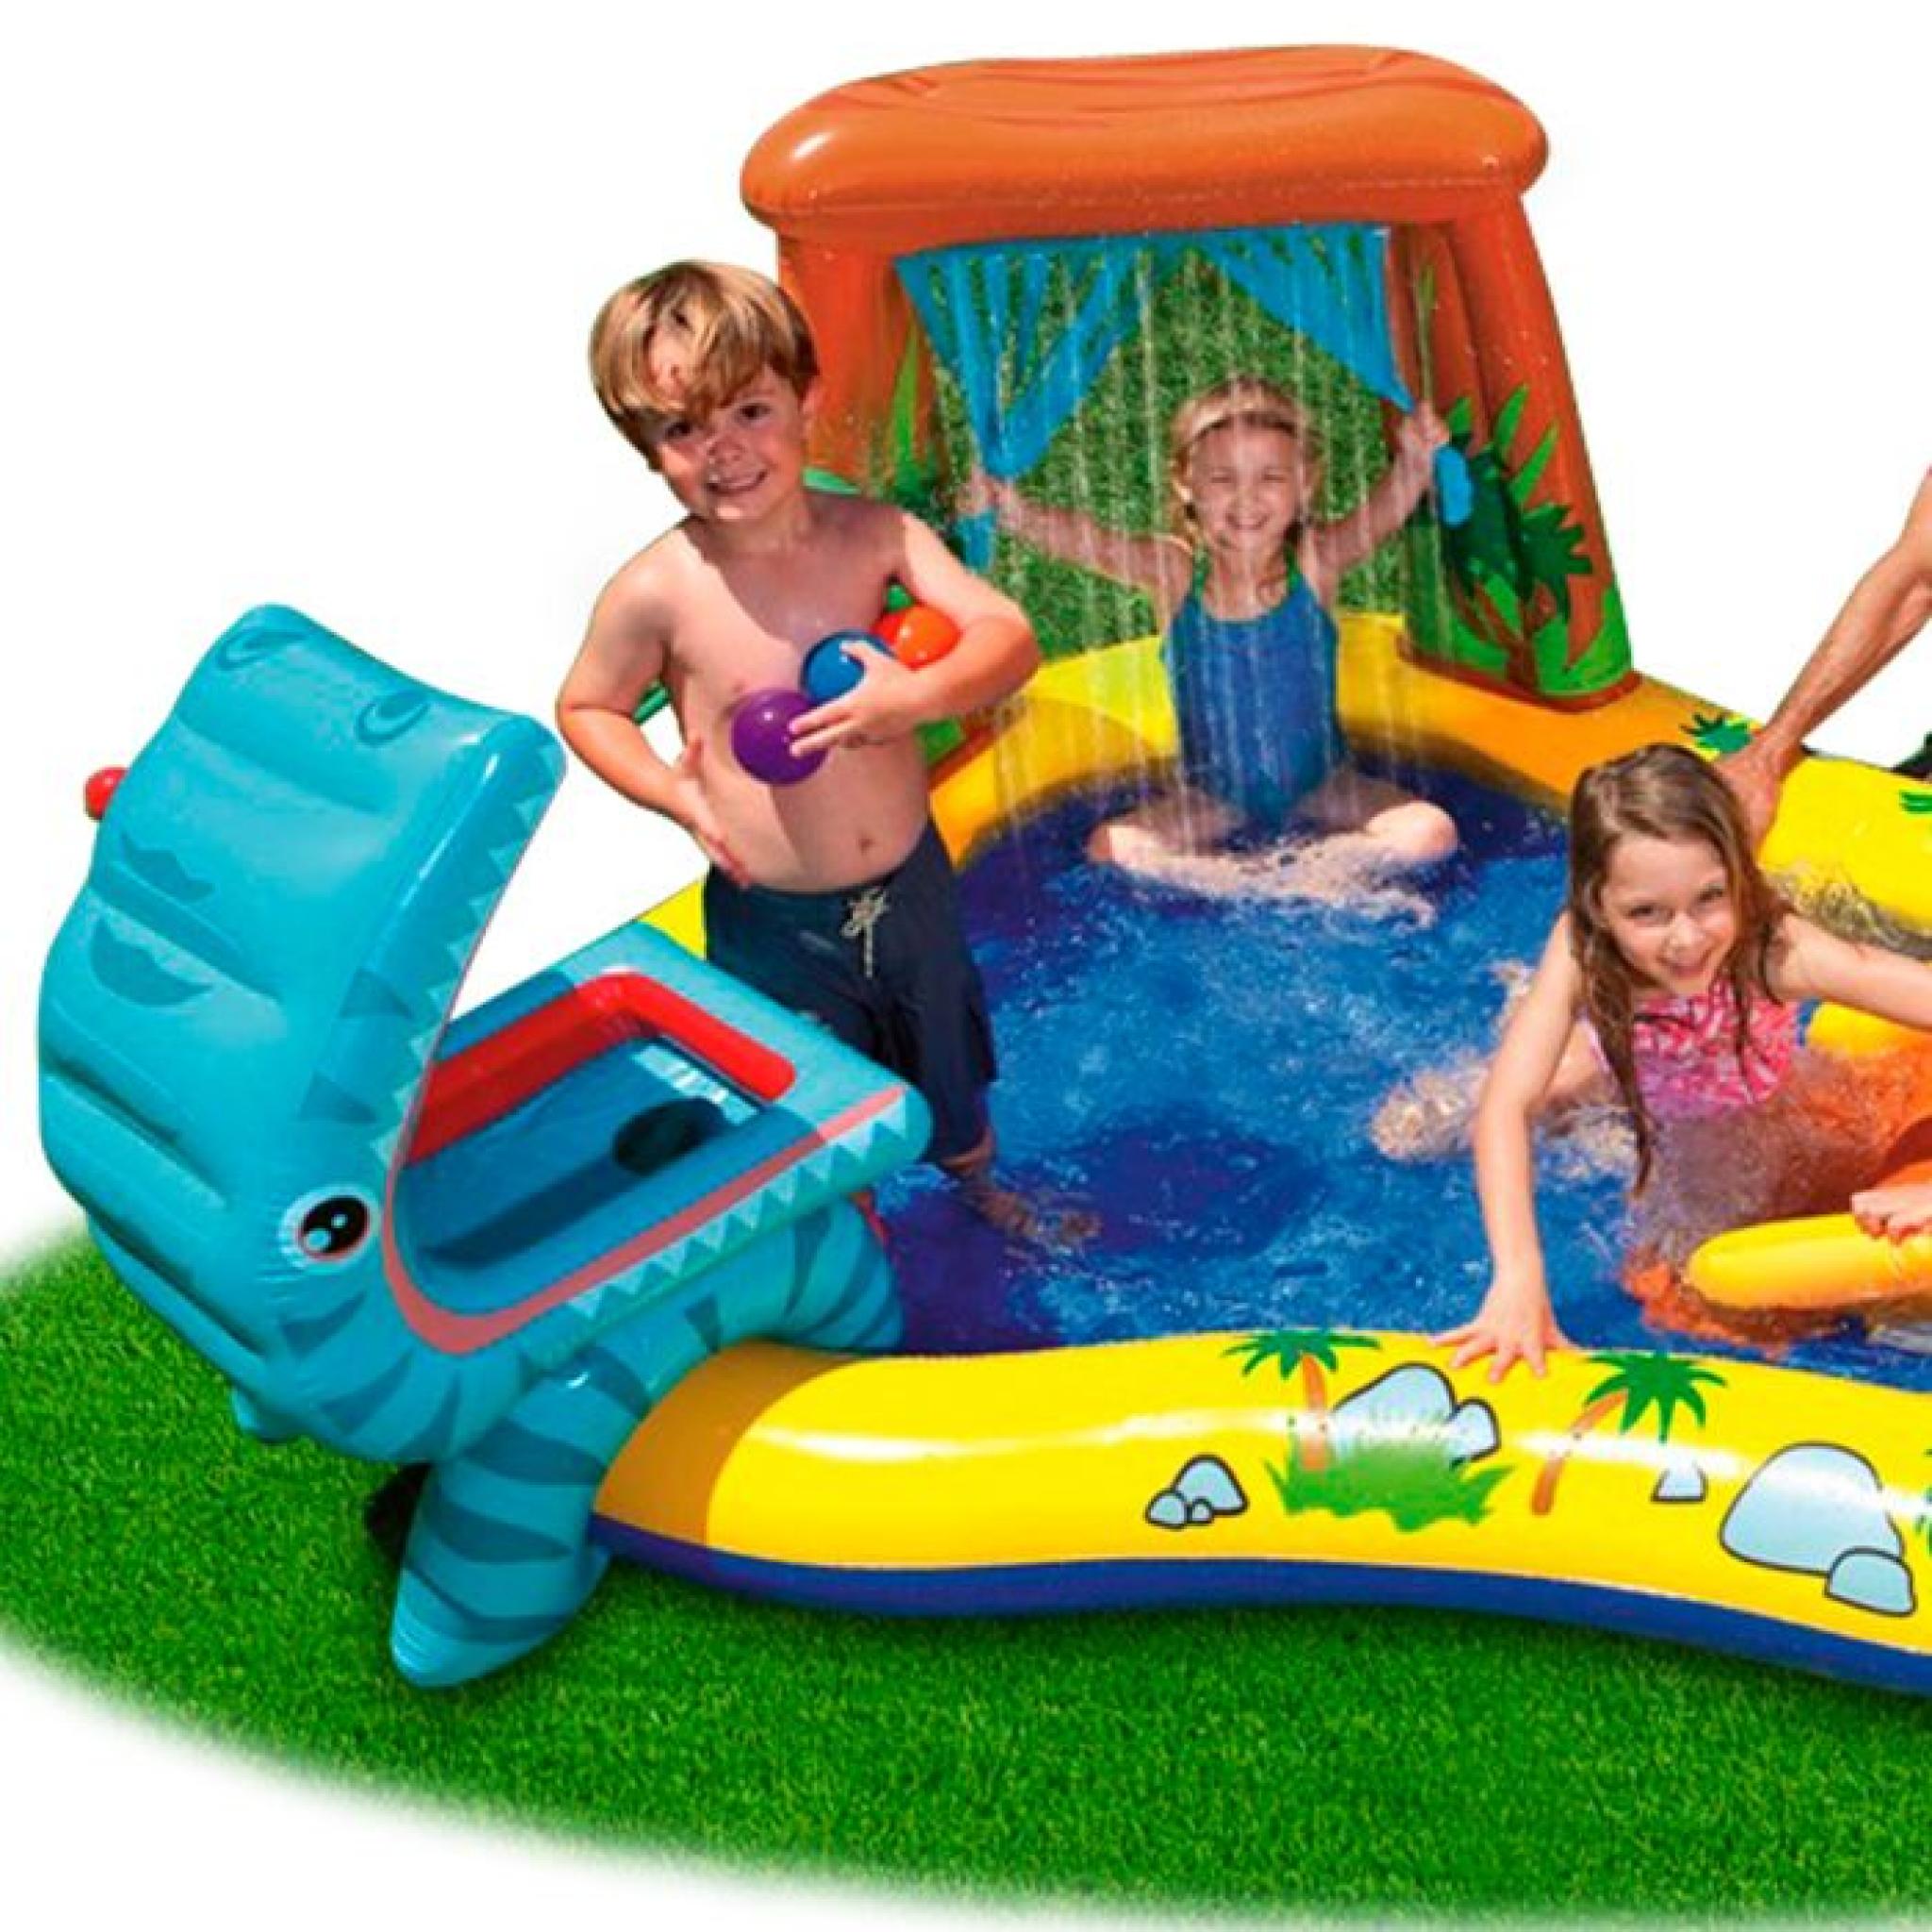 INTEX Piscine gonflable Enfant / Aire De Jeux aquatique 297 x 193 x 135 cm Rainbow avec Toboggan, Sprayer, Anneaux Gonflables et Bal pas cher